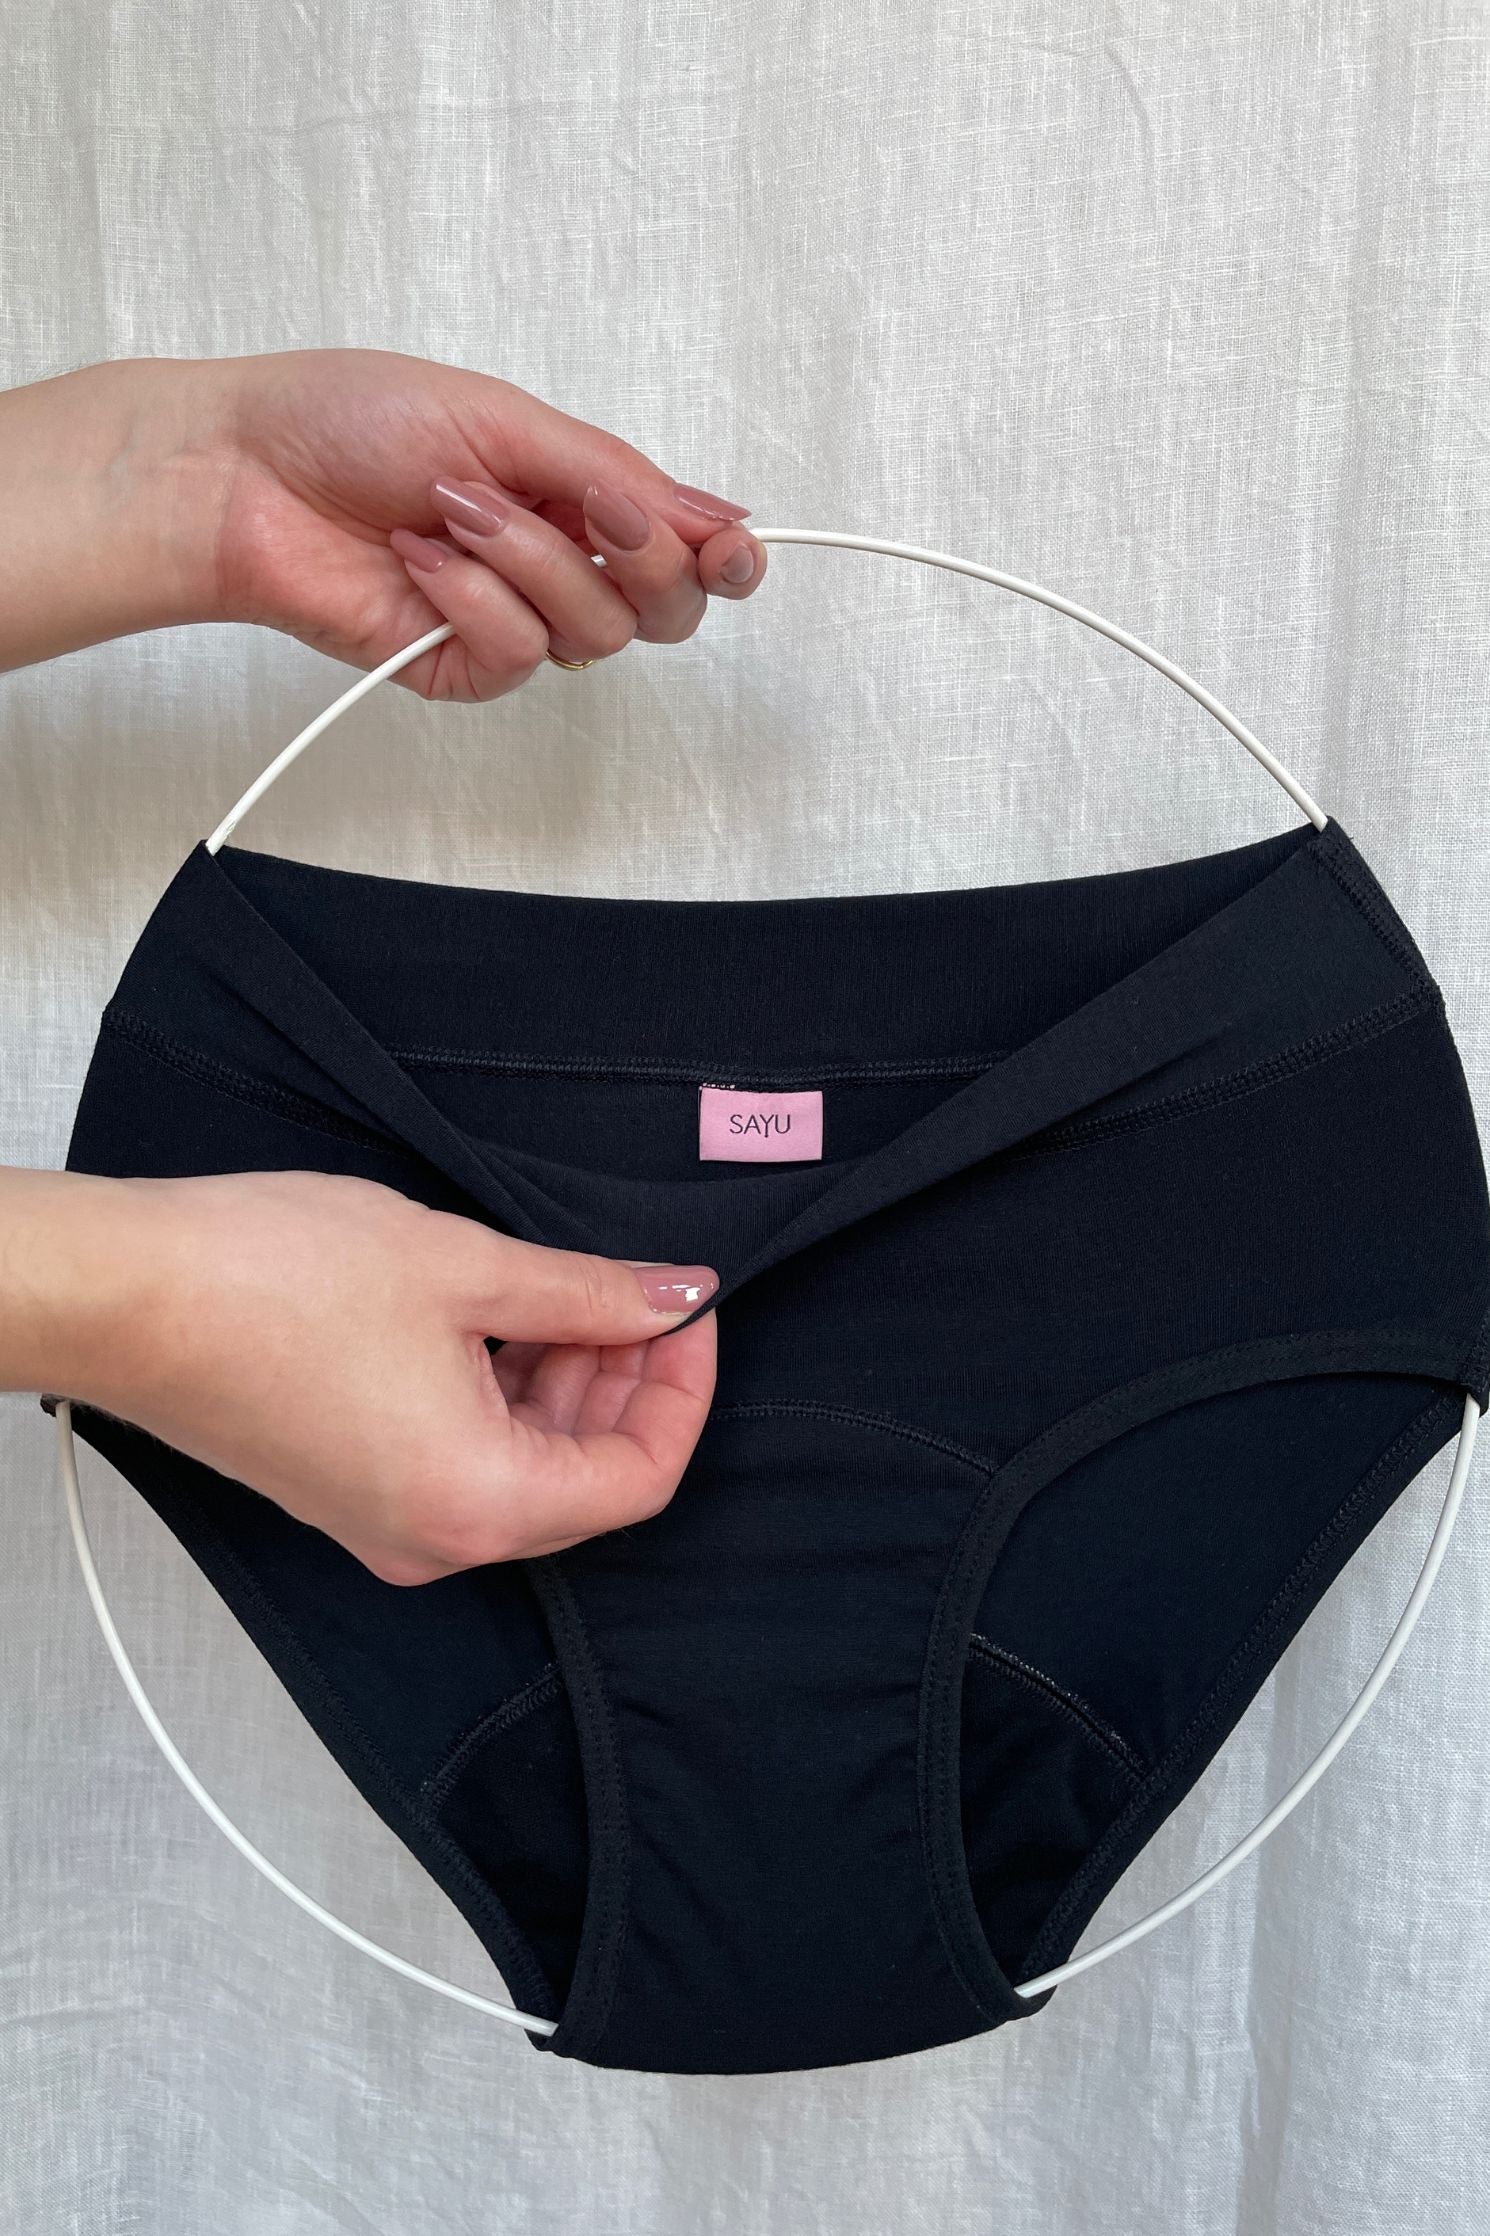 Produktová fotografie menstruačních kalhotek pro dívky. Přední pohled a detail etikety.